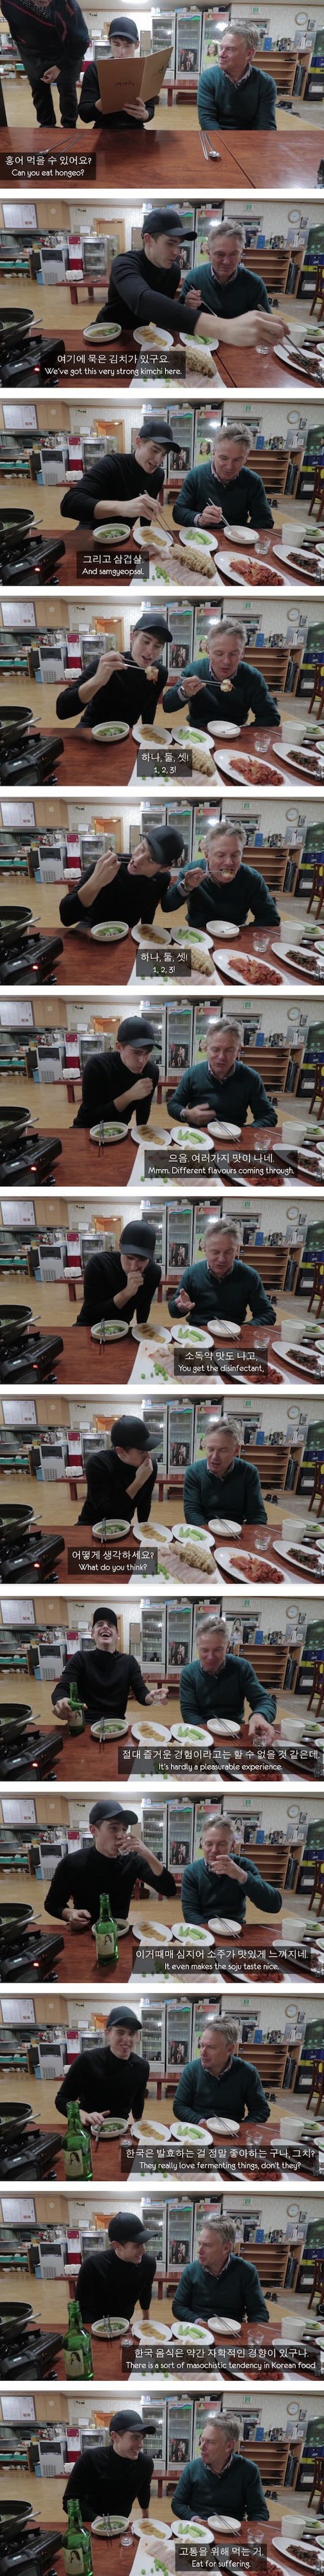 자학적인 한국 음식